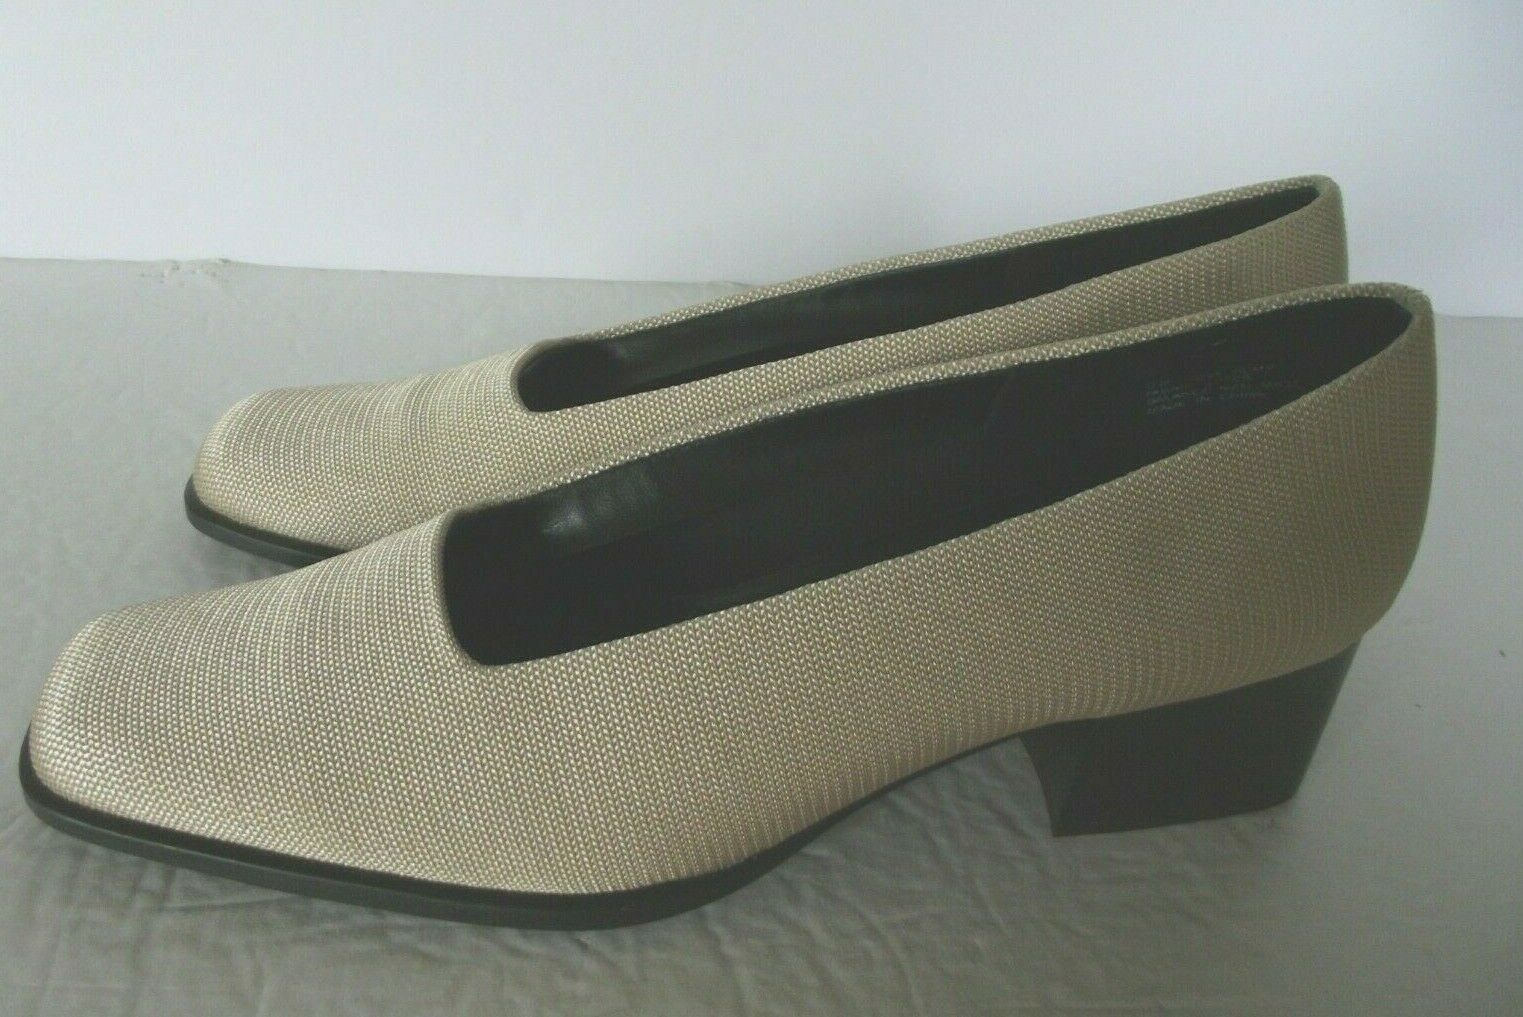 Aerosoles Womens Shoes Slip On Pumps Size 9 Gold Metallic Block Heel Comfort